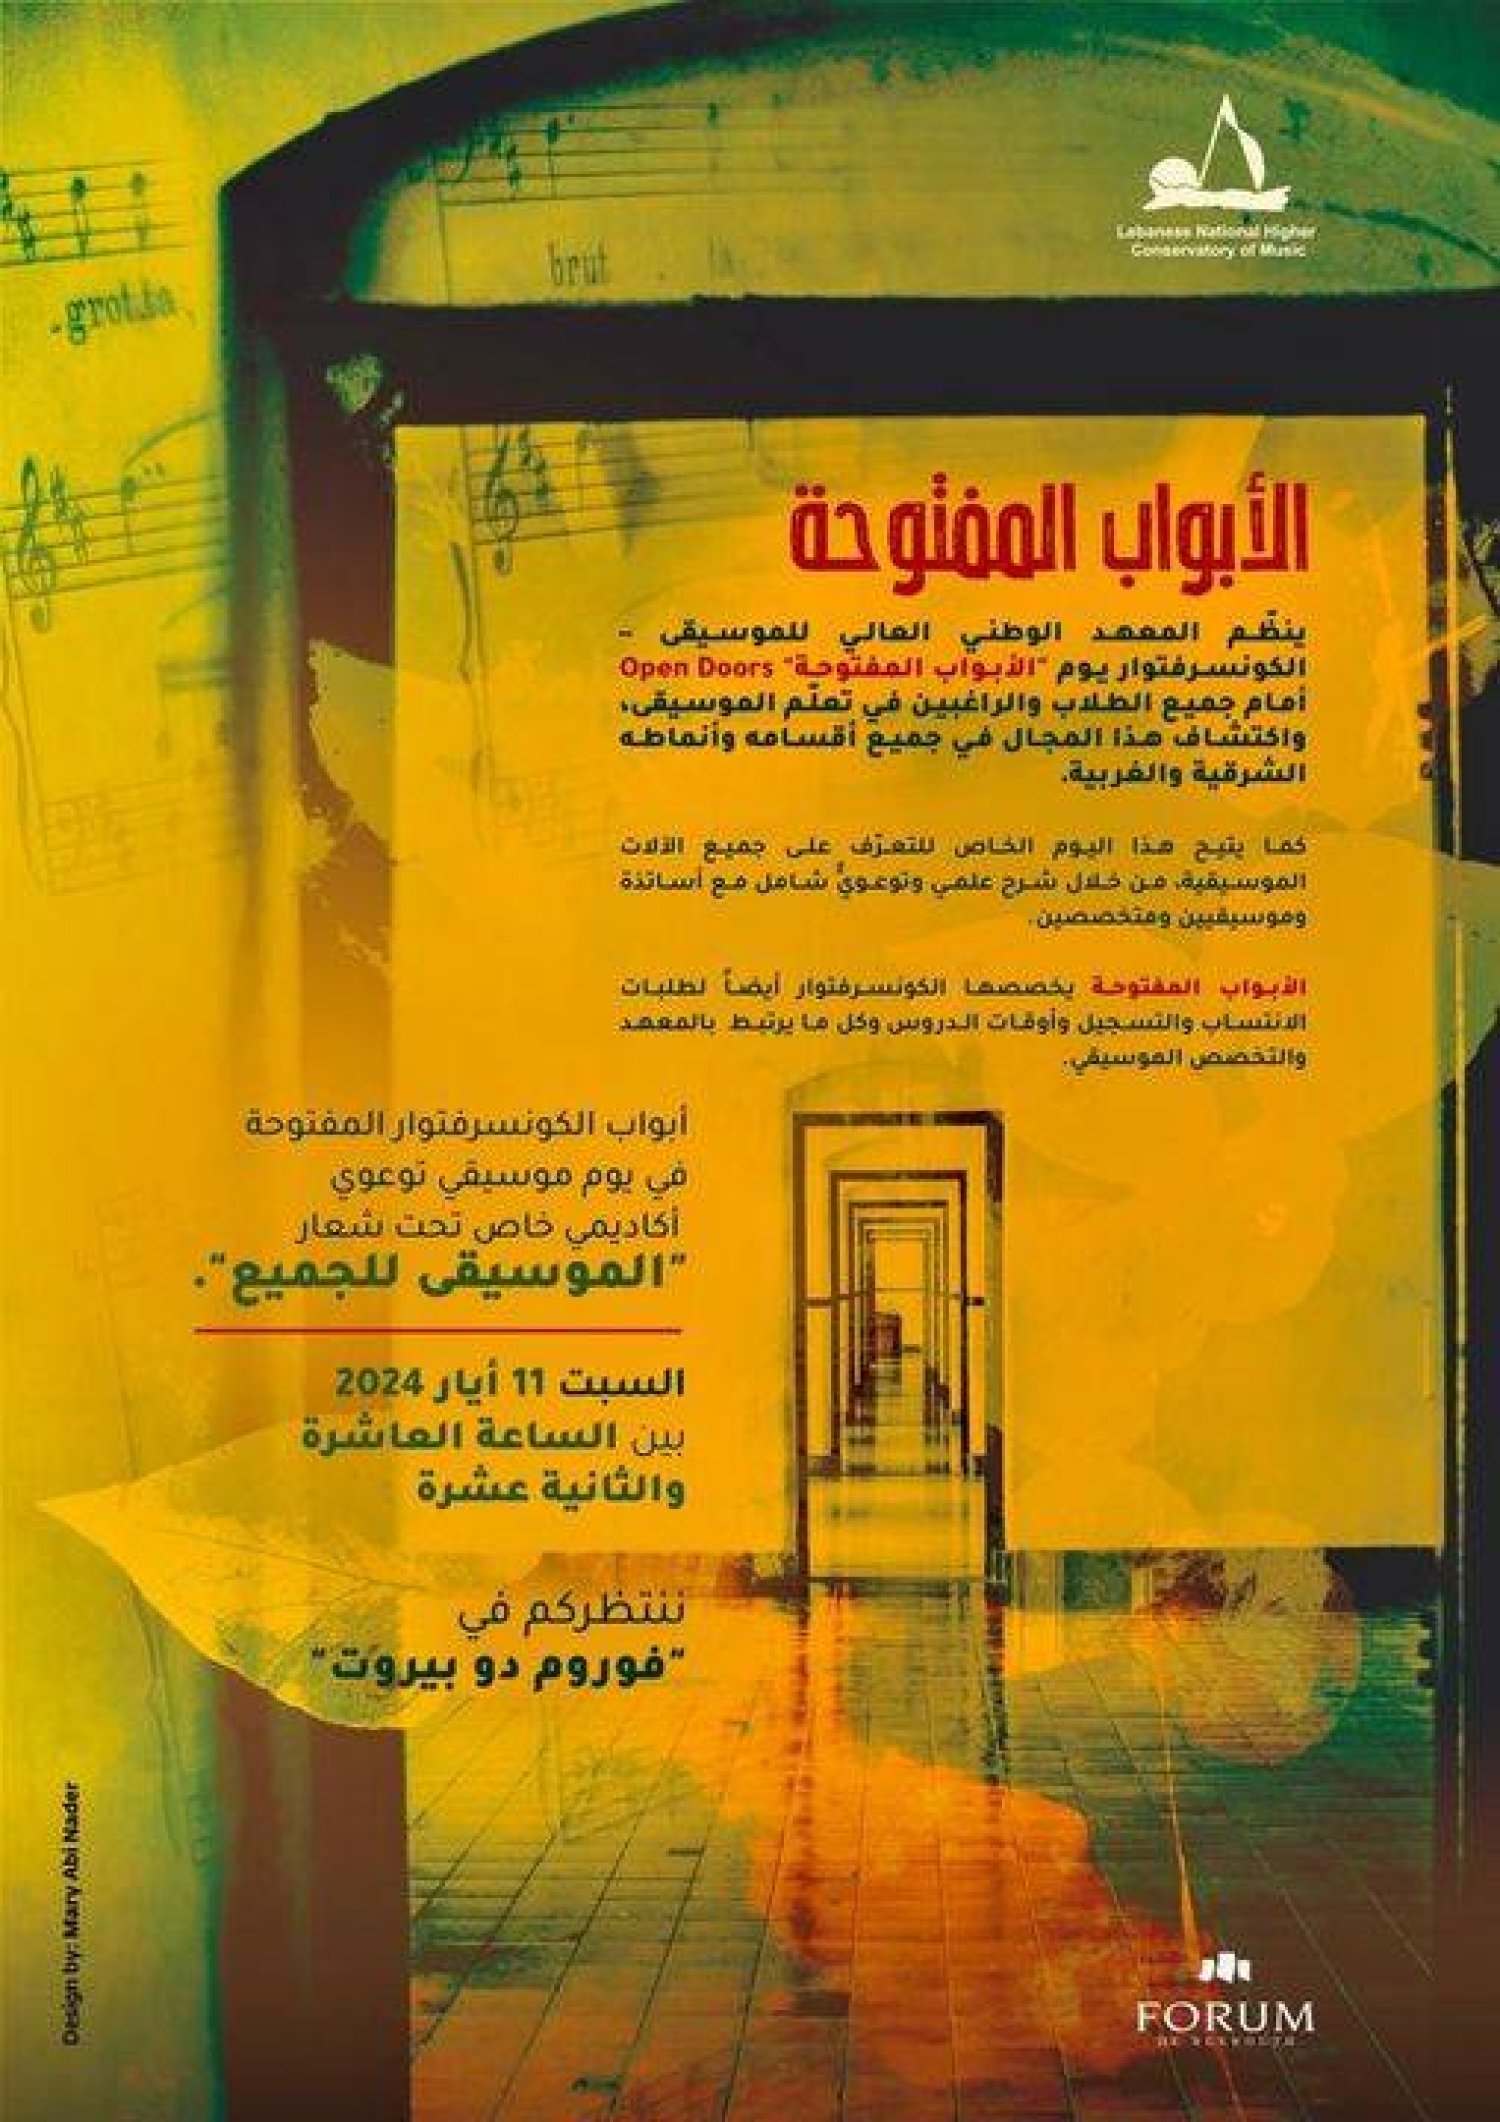 «الأبواب المفتوحة» بمشاركة أساتذة المعهد وغيرهم من خارج لبنان (الكونسرفاتوار الوطني)